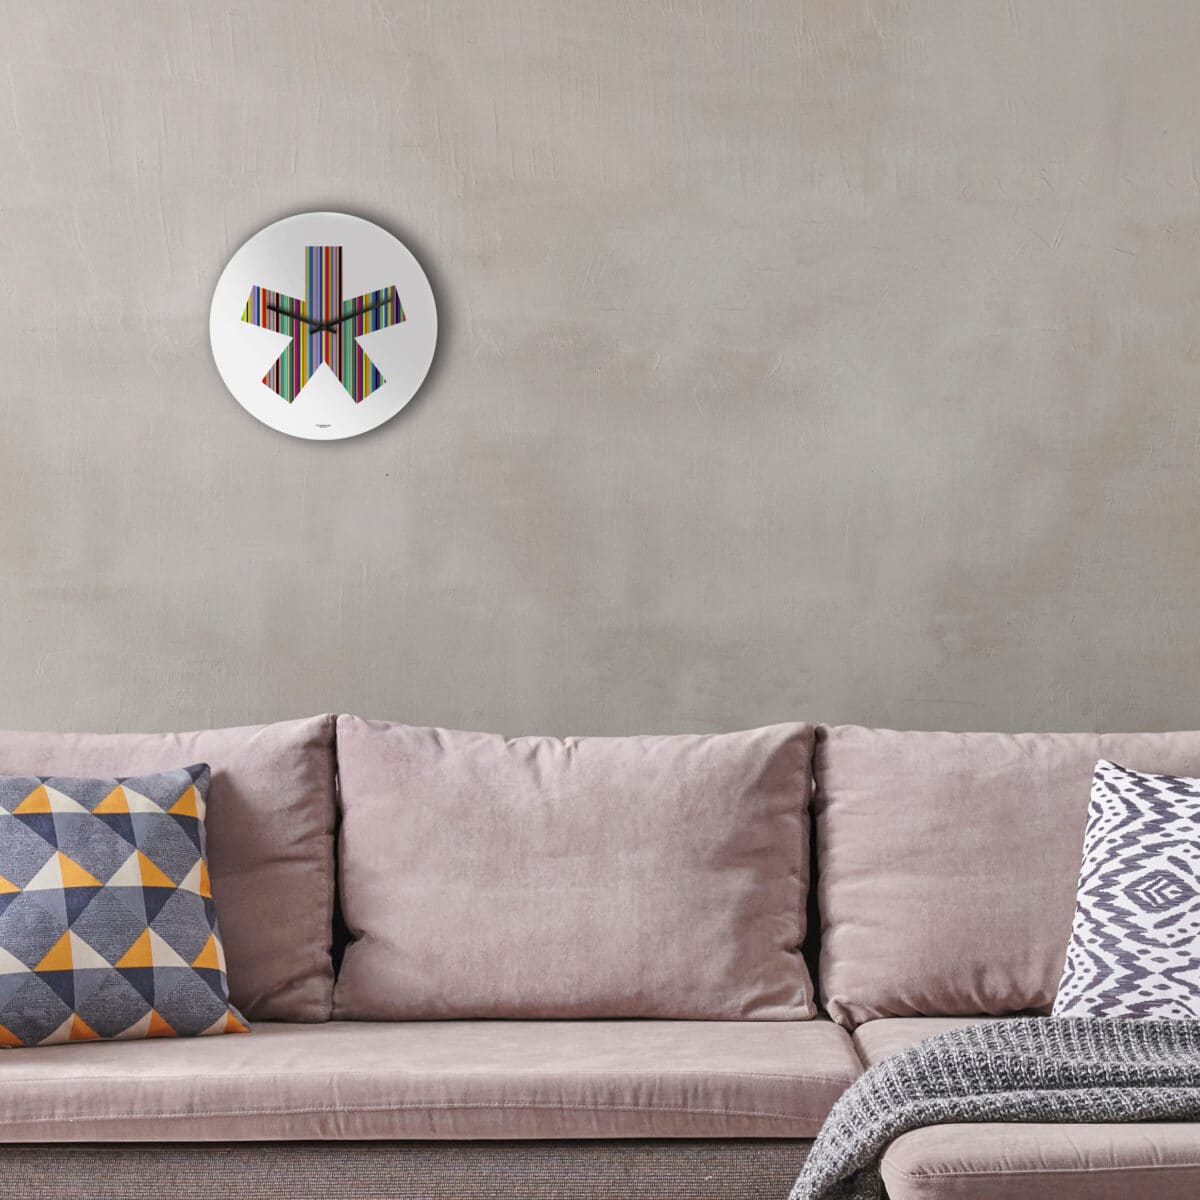 sopra un divano color tortora è stato appeso un orologio a muro rotondo, base bianca, con la stampa di un grande asterisco a 5 braccia multirighe e multicolore